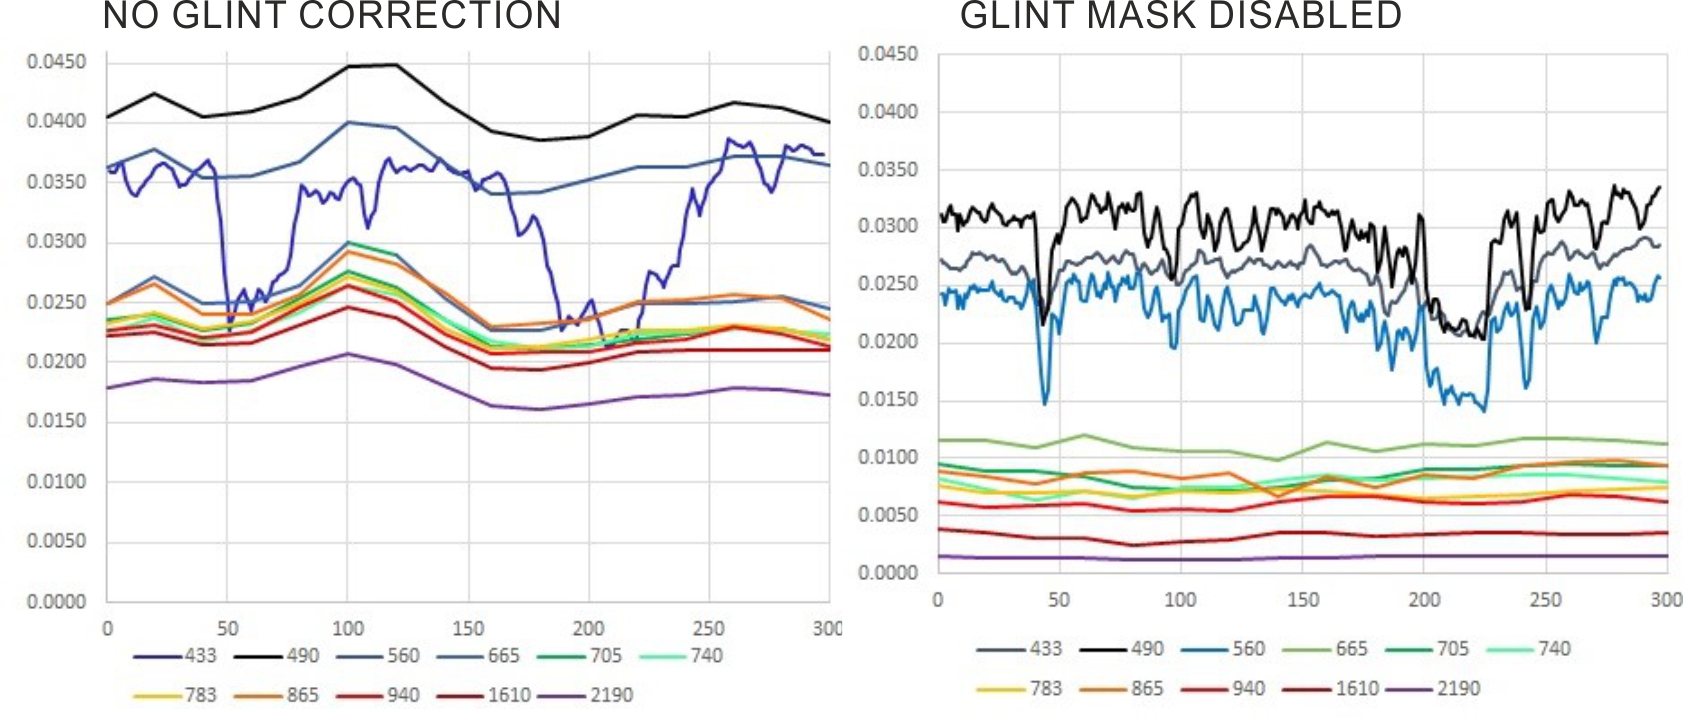 Spectral profiles comparing no glint correction with glint correction with glint ams disabled